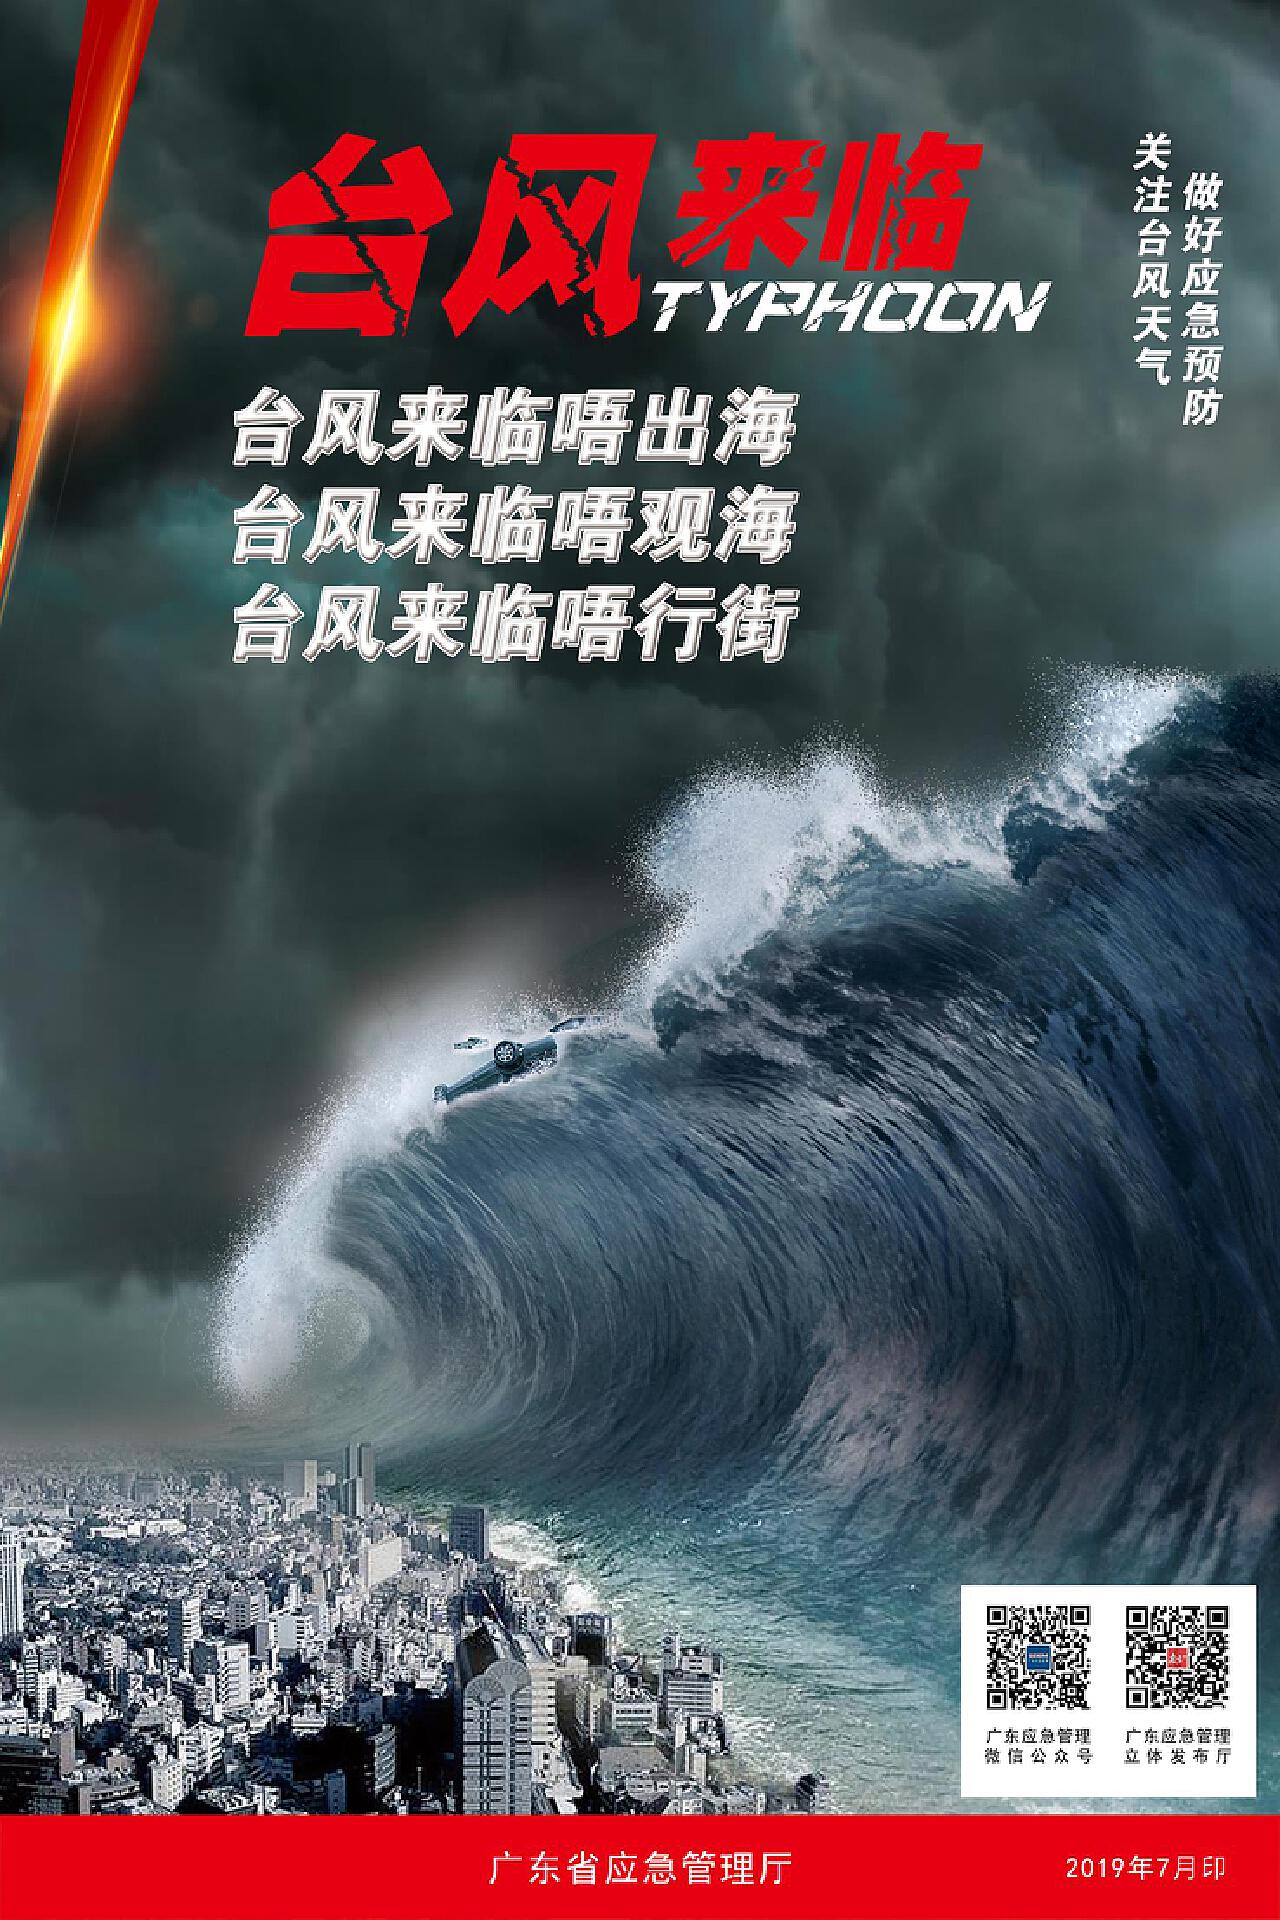 台风“烟花”肆虐 绍兴消防紧急救援“百岁老人”-新闻中心-温州网